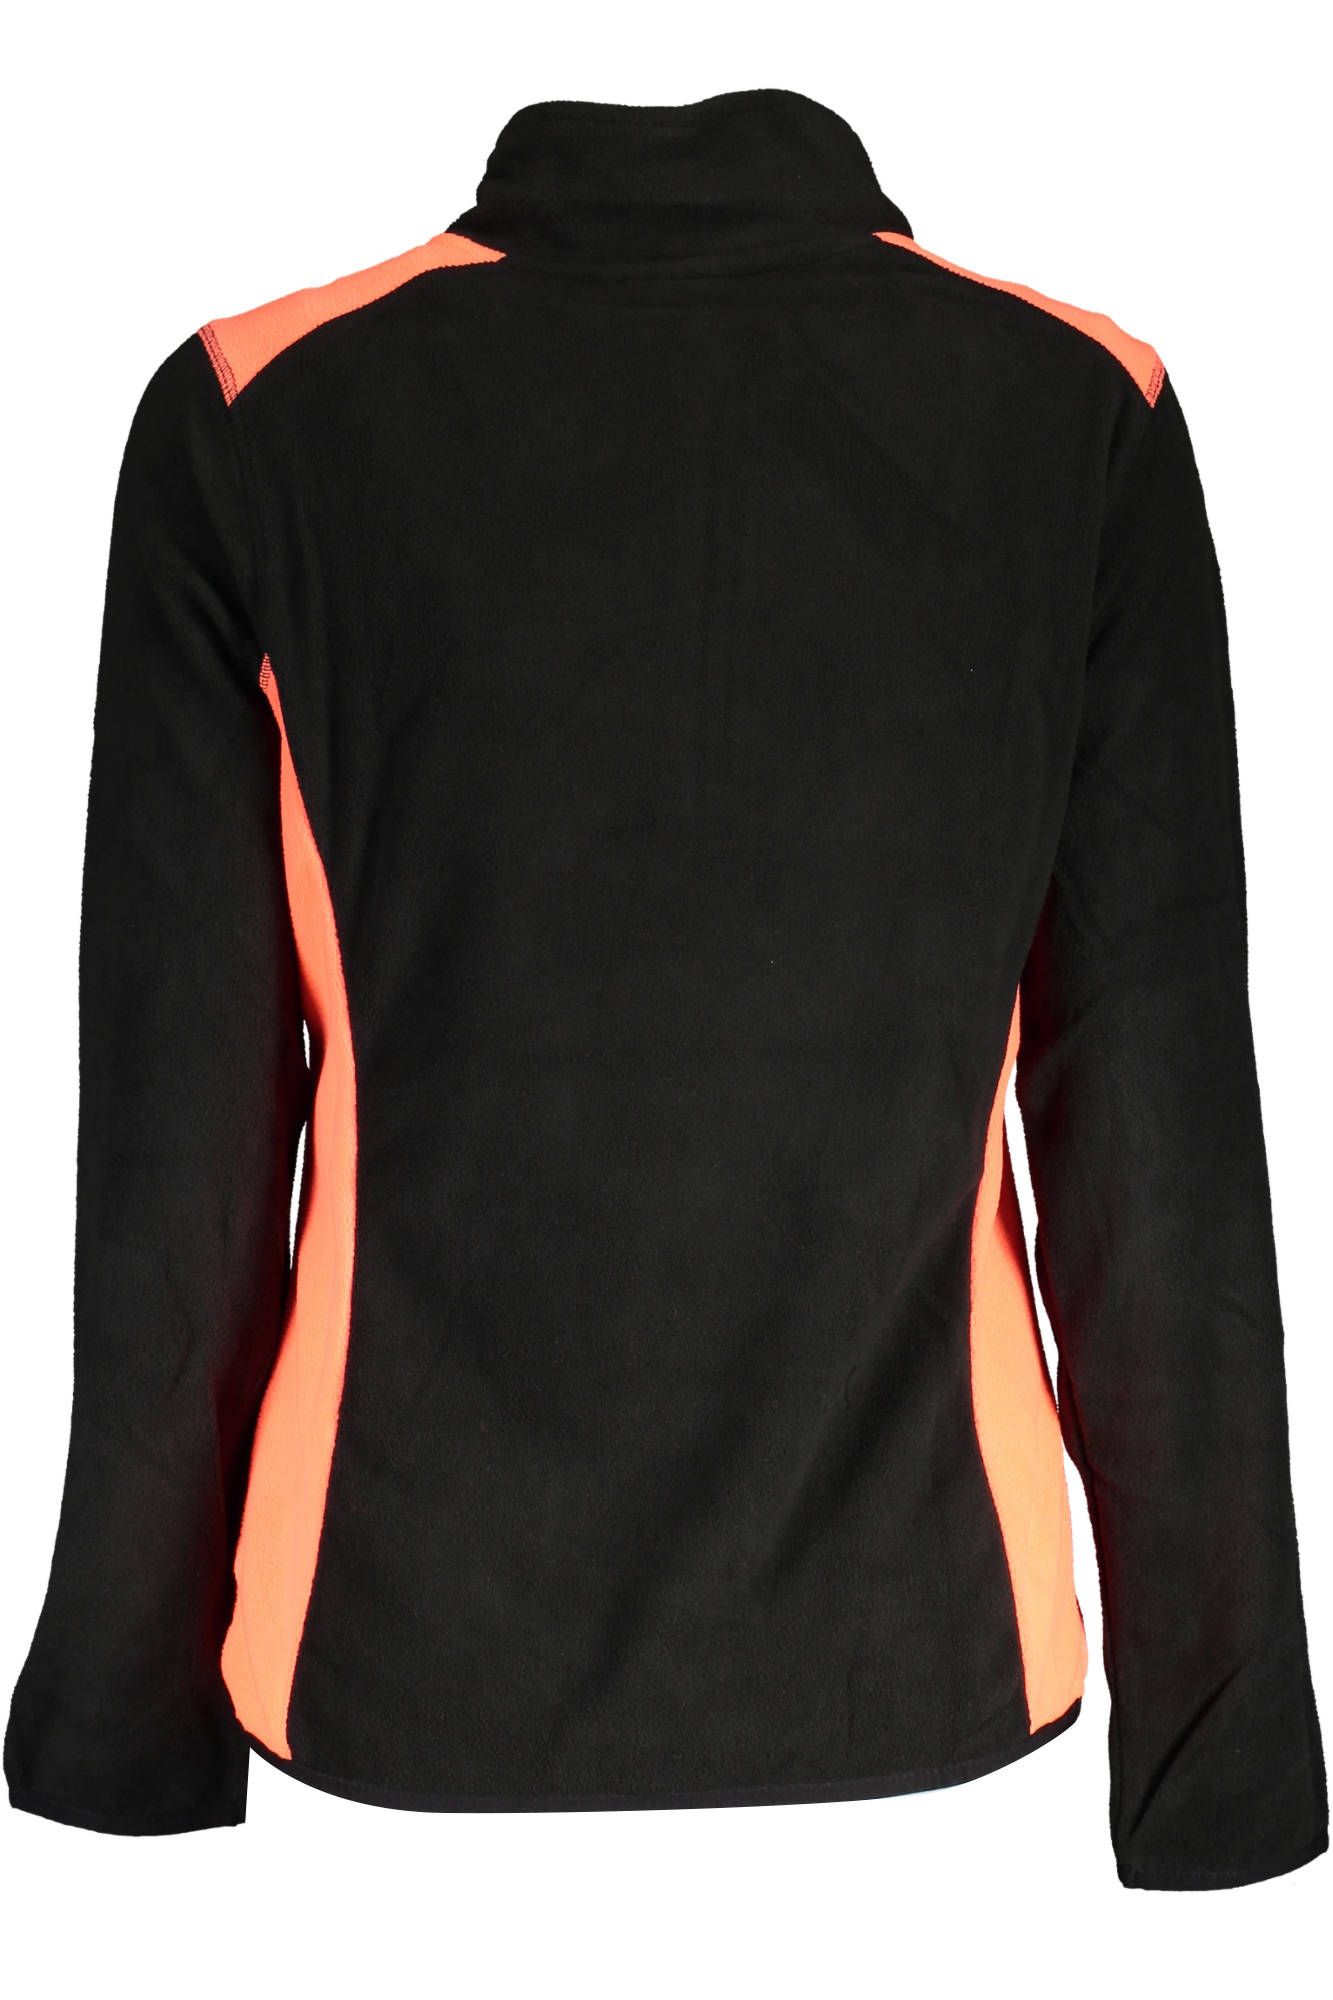 Chic Half-Zip Black Sweatshirt with Contrasting Accents